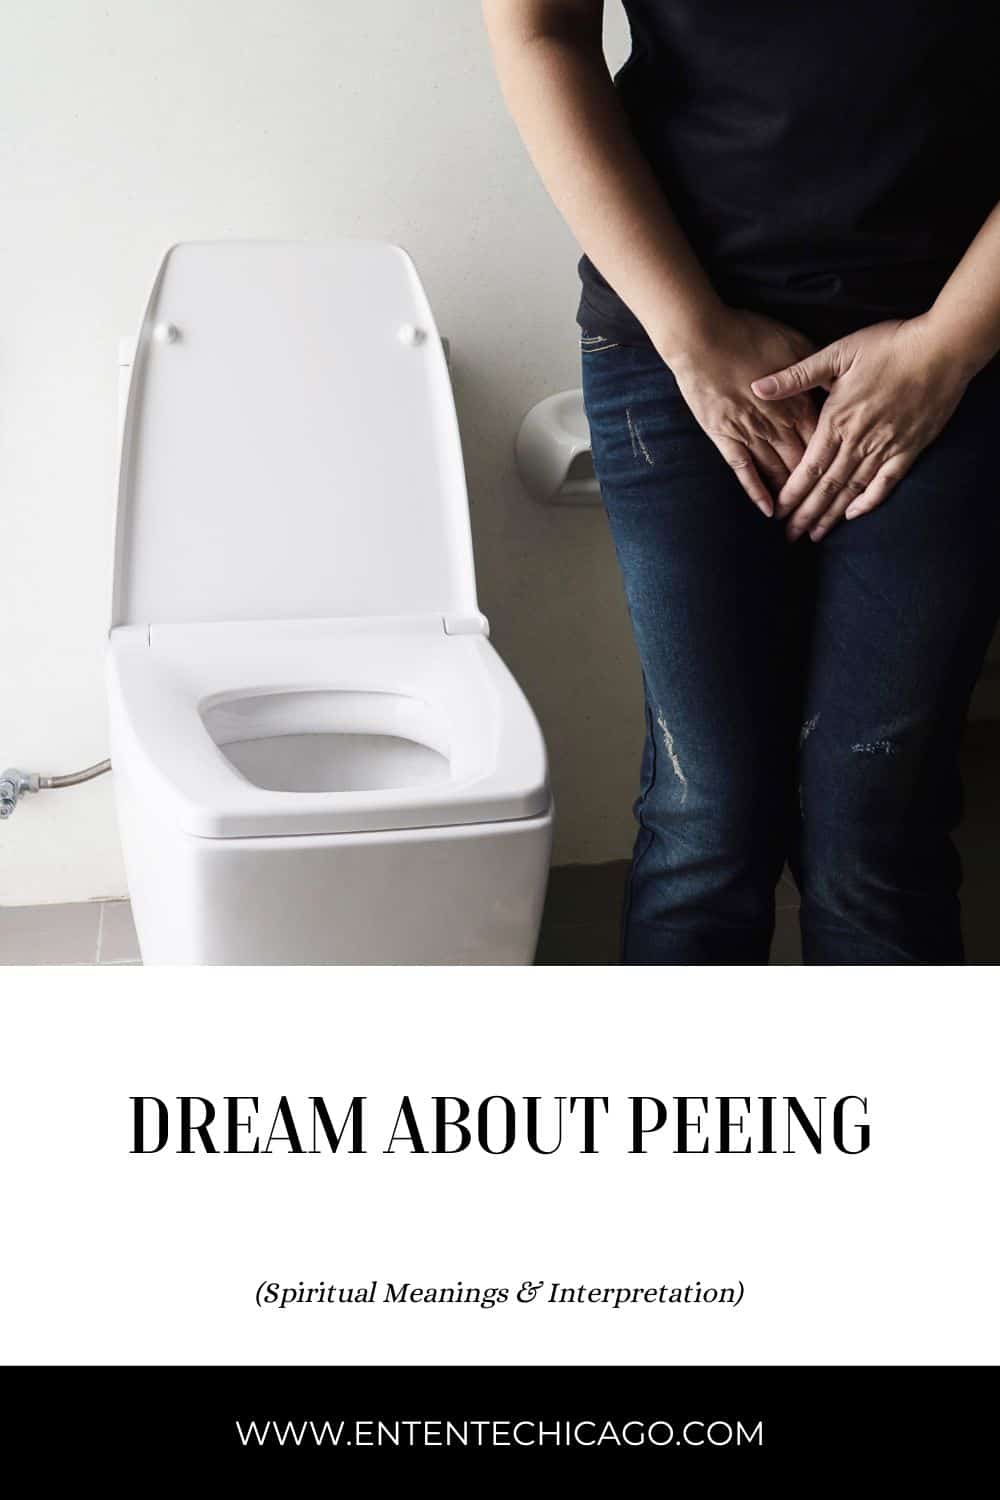  11 Interpretazione del sogno della pipì nell'urina